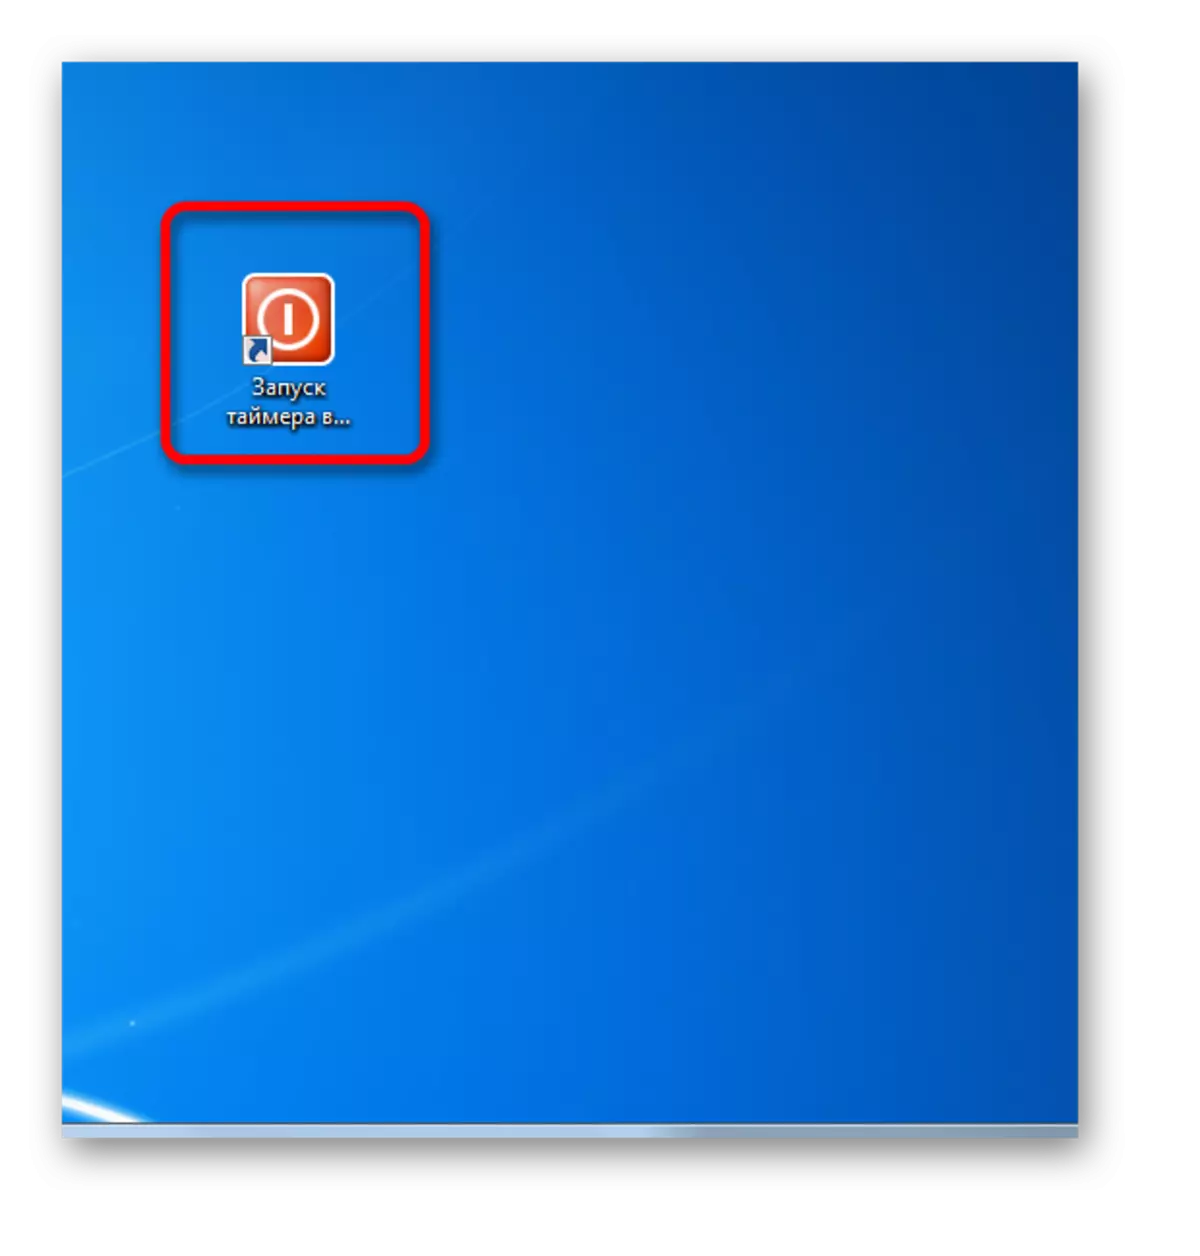 Ярлык иконасы Windows 7 үзгәртелде